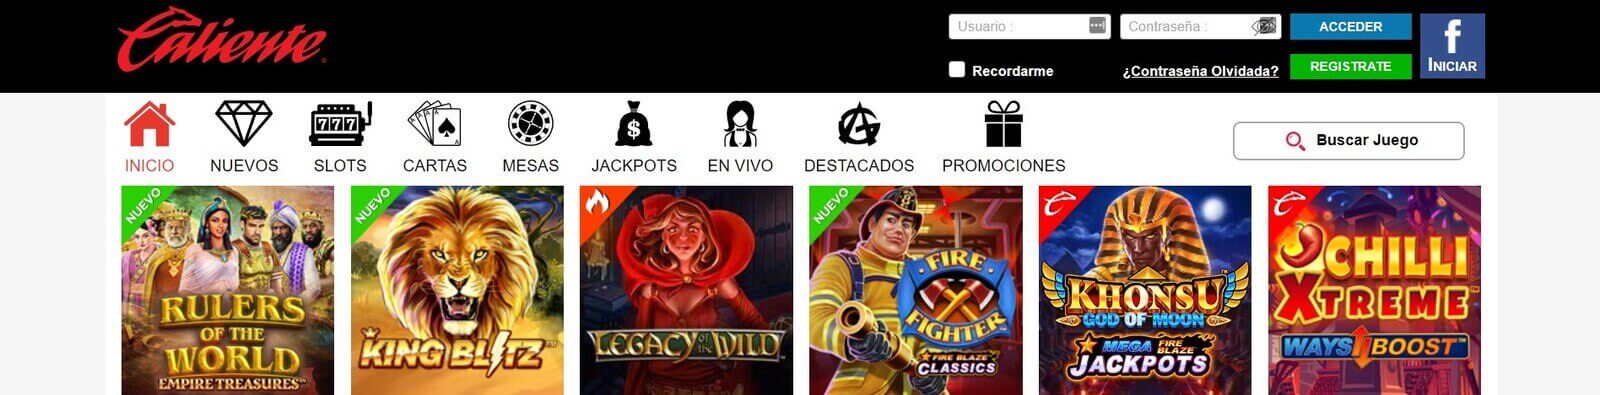 Casino Caliente   Juega a las tragamonedas online de Caliente Casino en México